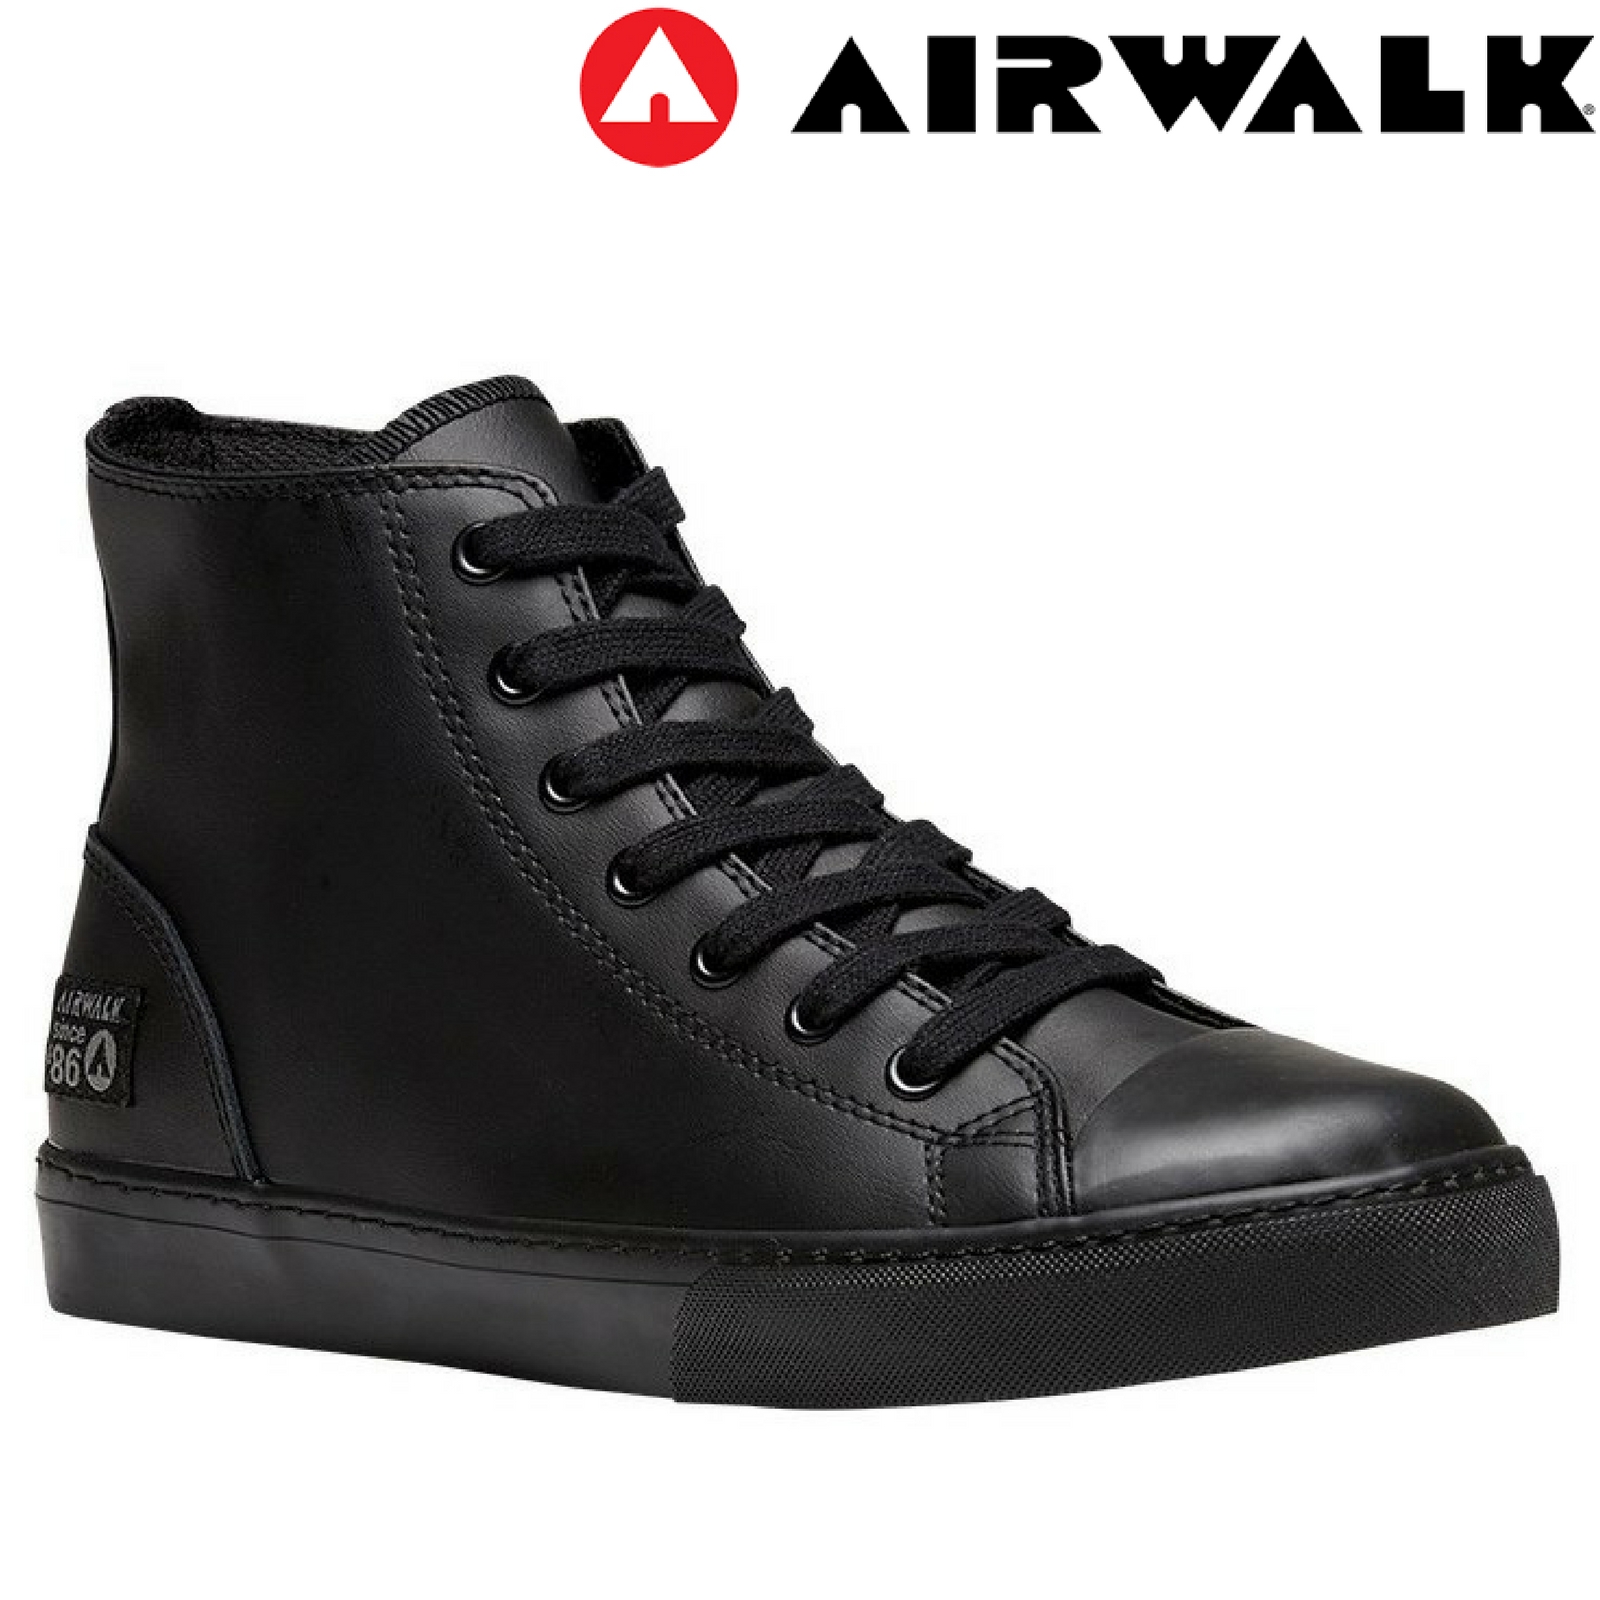 airwalk black high tops